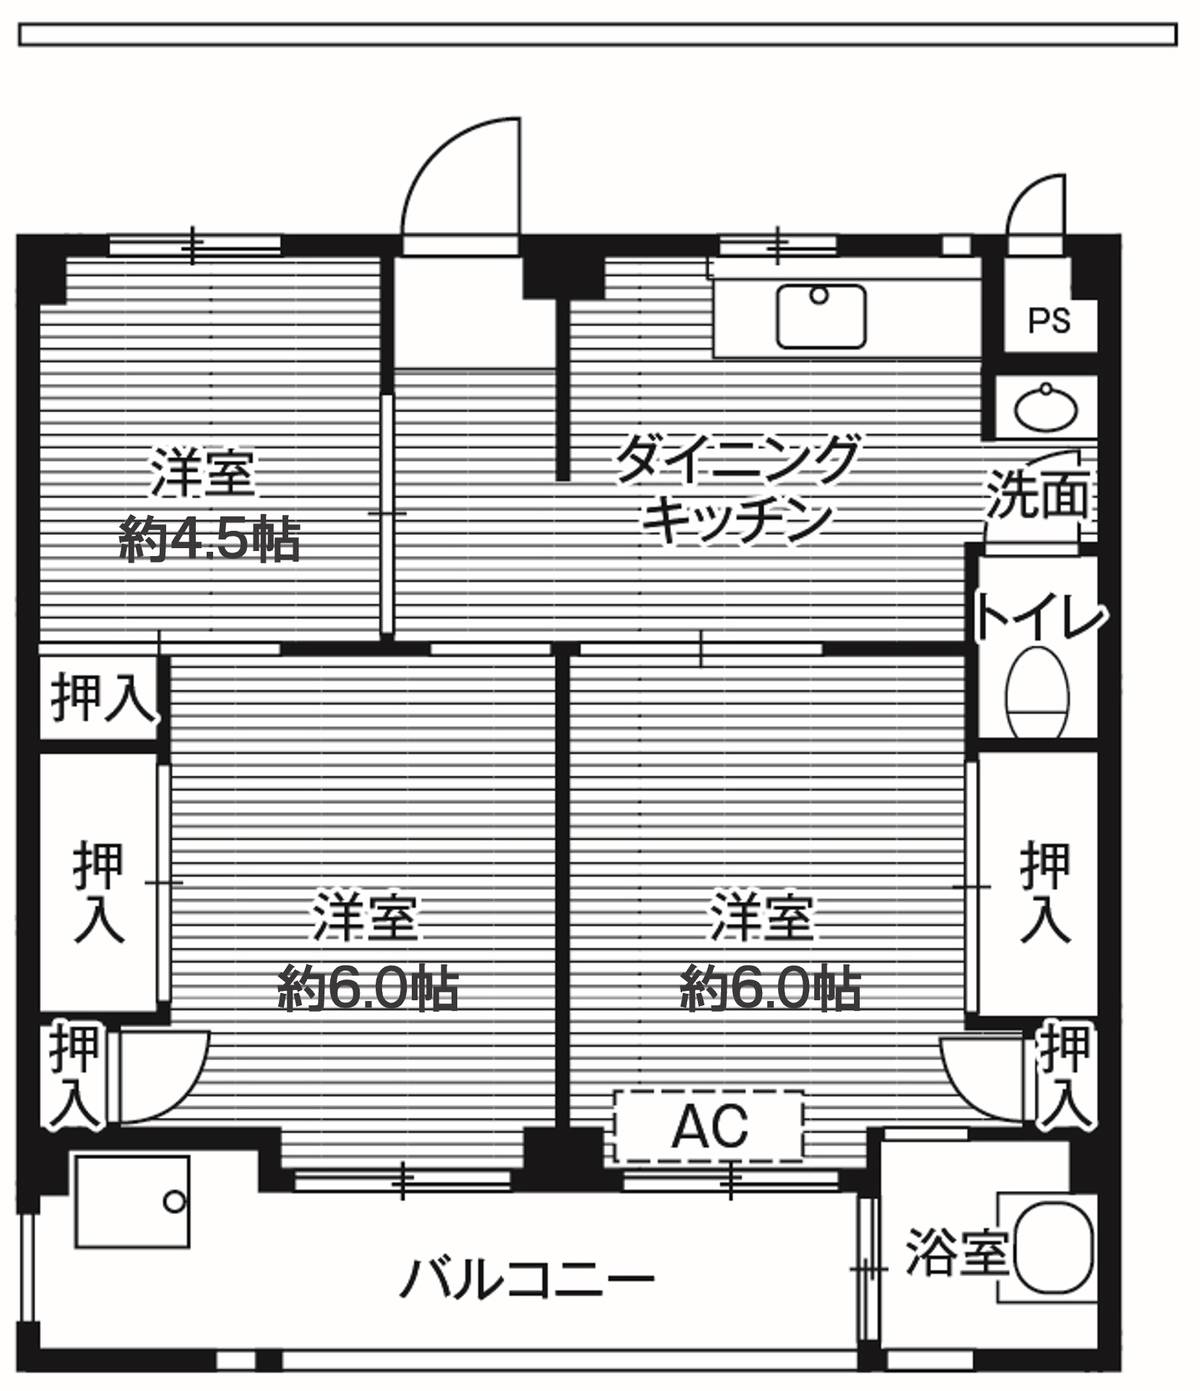 3DK floorplan of Village House Aioi in Wakaba-ku